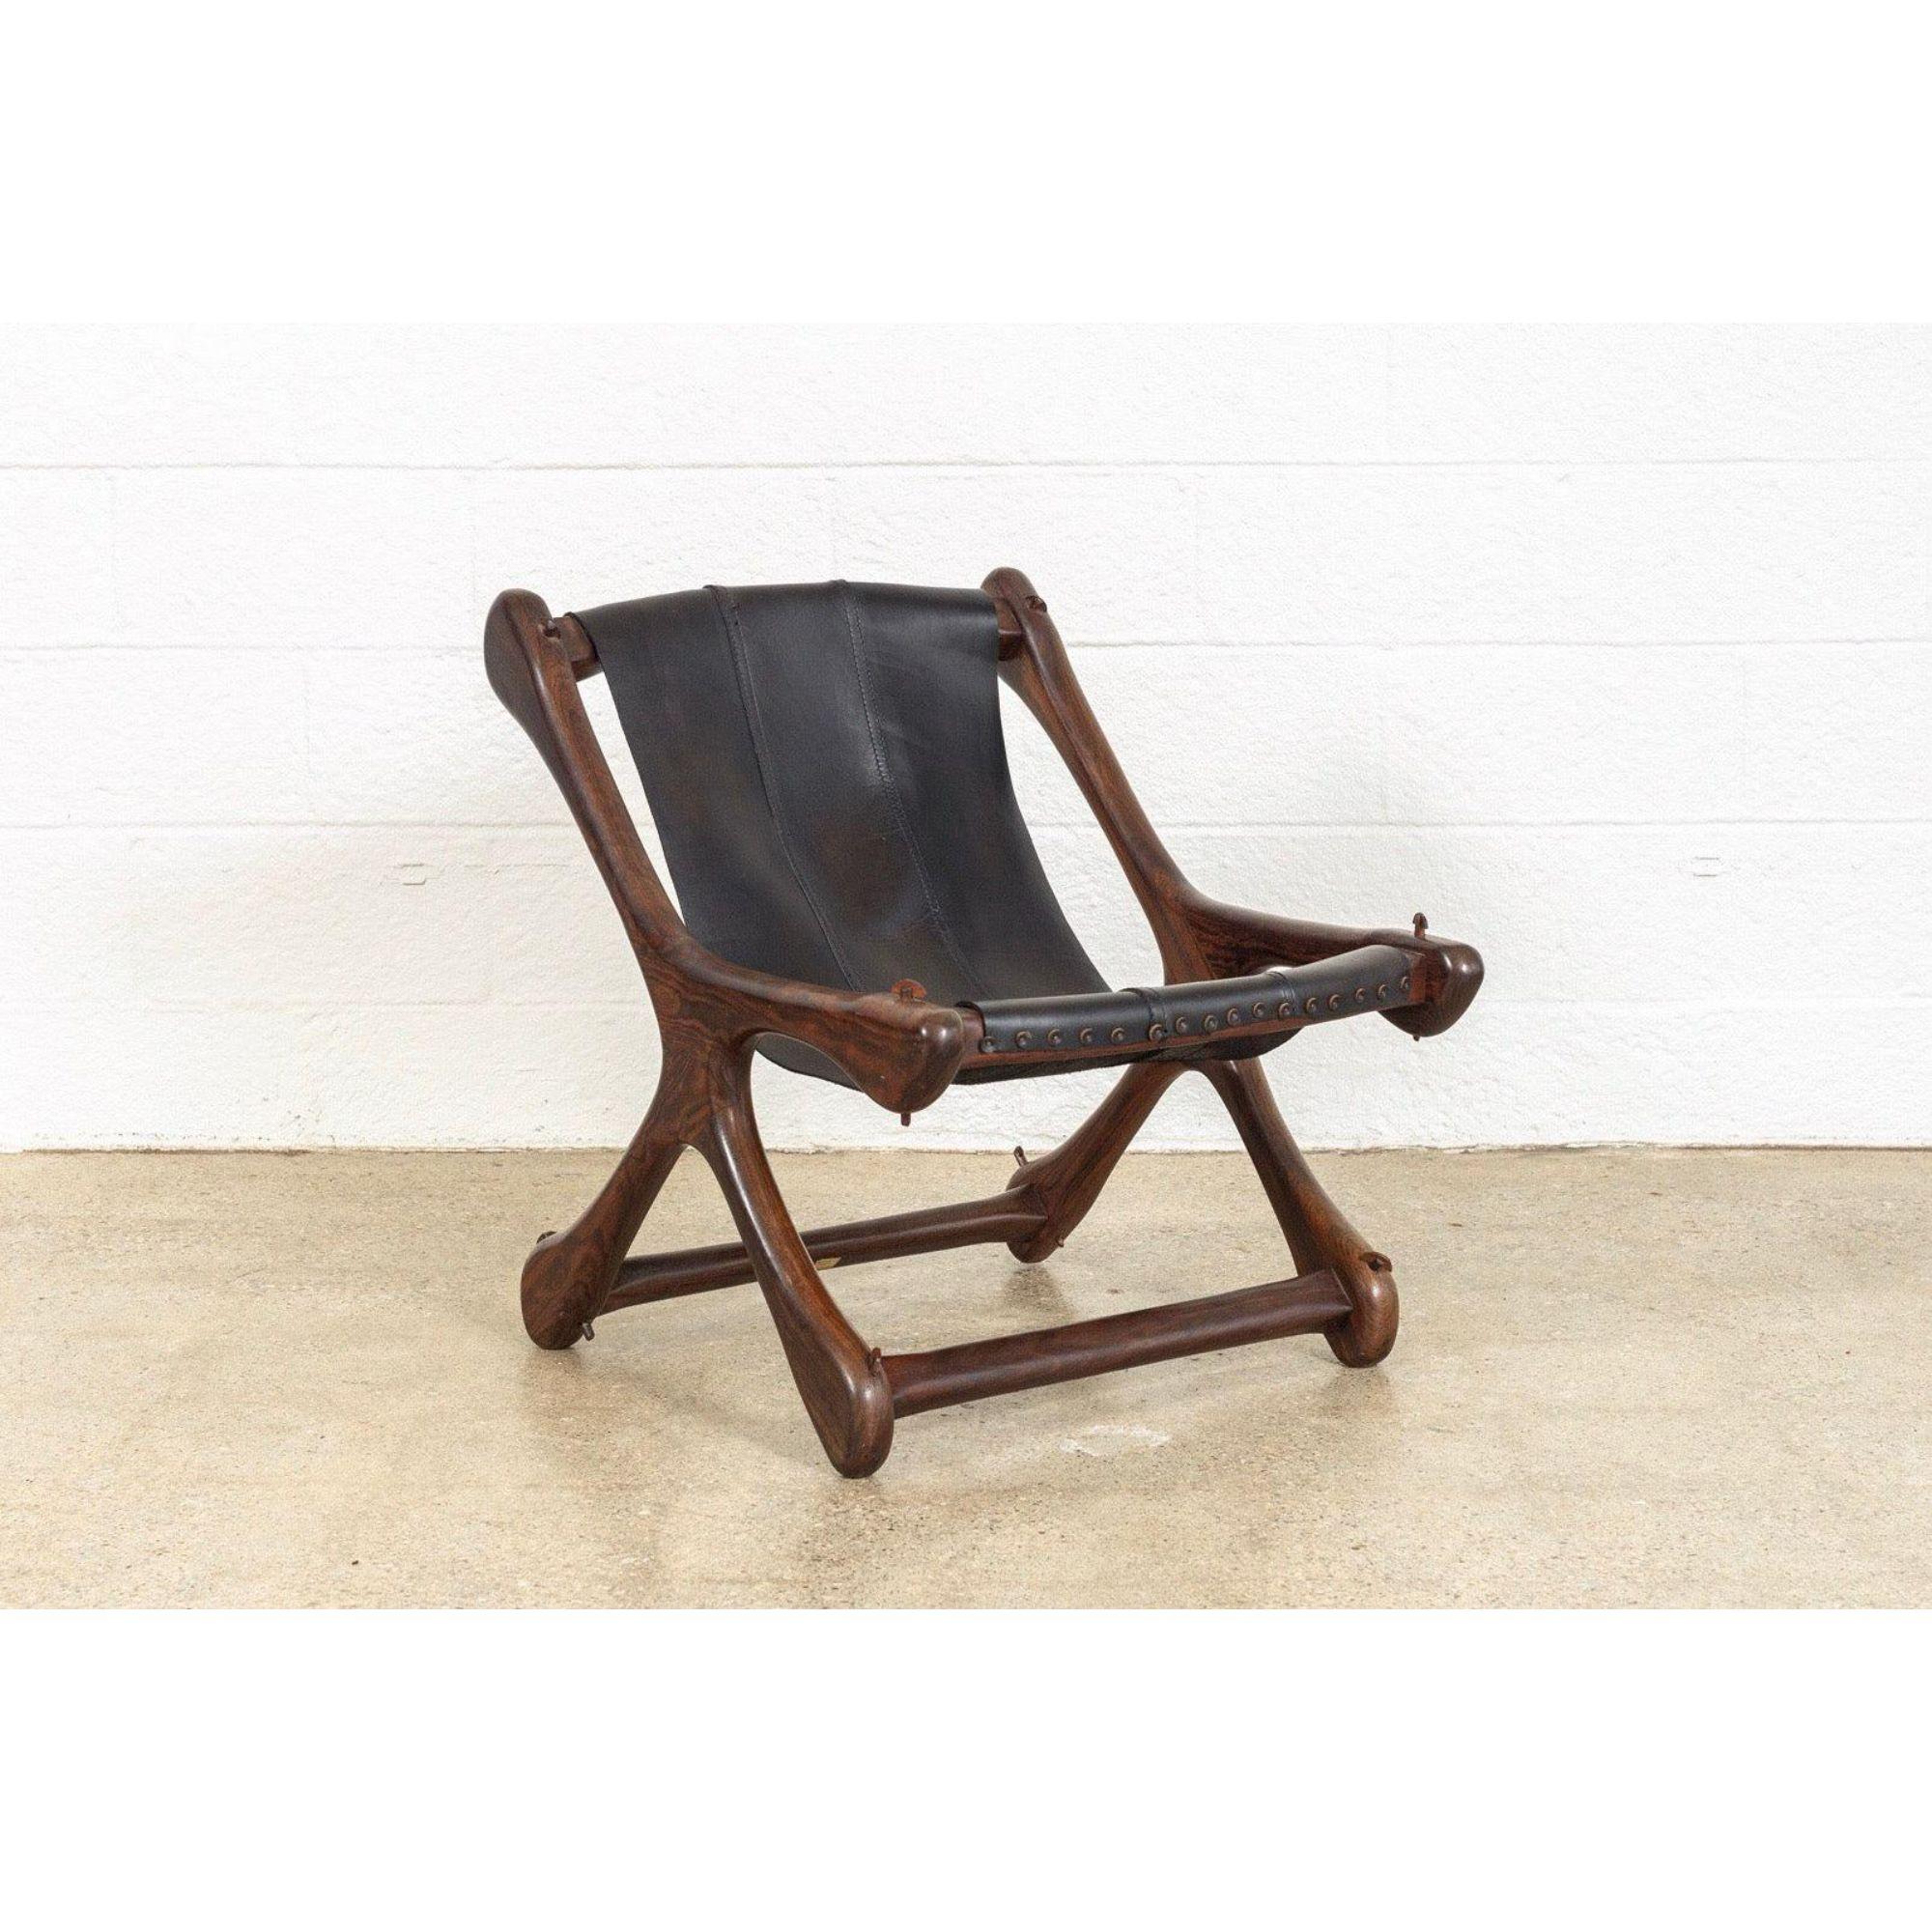 Ce fauteuil vintage de style Mid-Century Modern a été conçu dans les années 1950 par Don Shoemaker et produit par Señal, S.A., Mexique, vers 1960. Chef de file de la modernité mexicaine du milieu du siècle, les pièces de Design/One présentent des